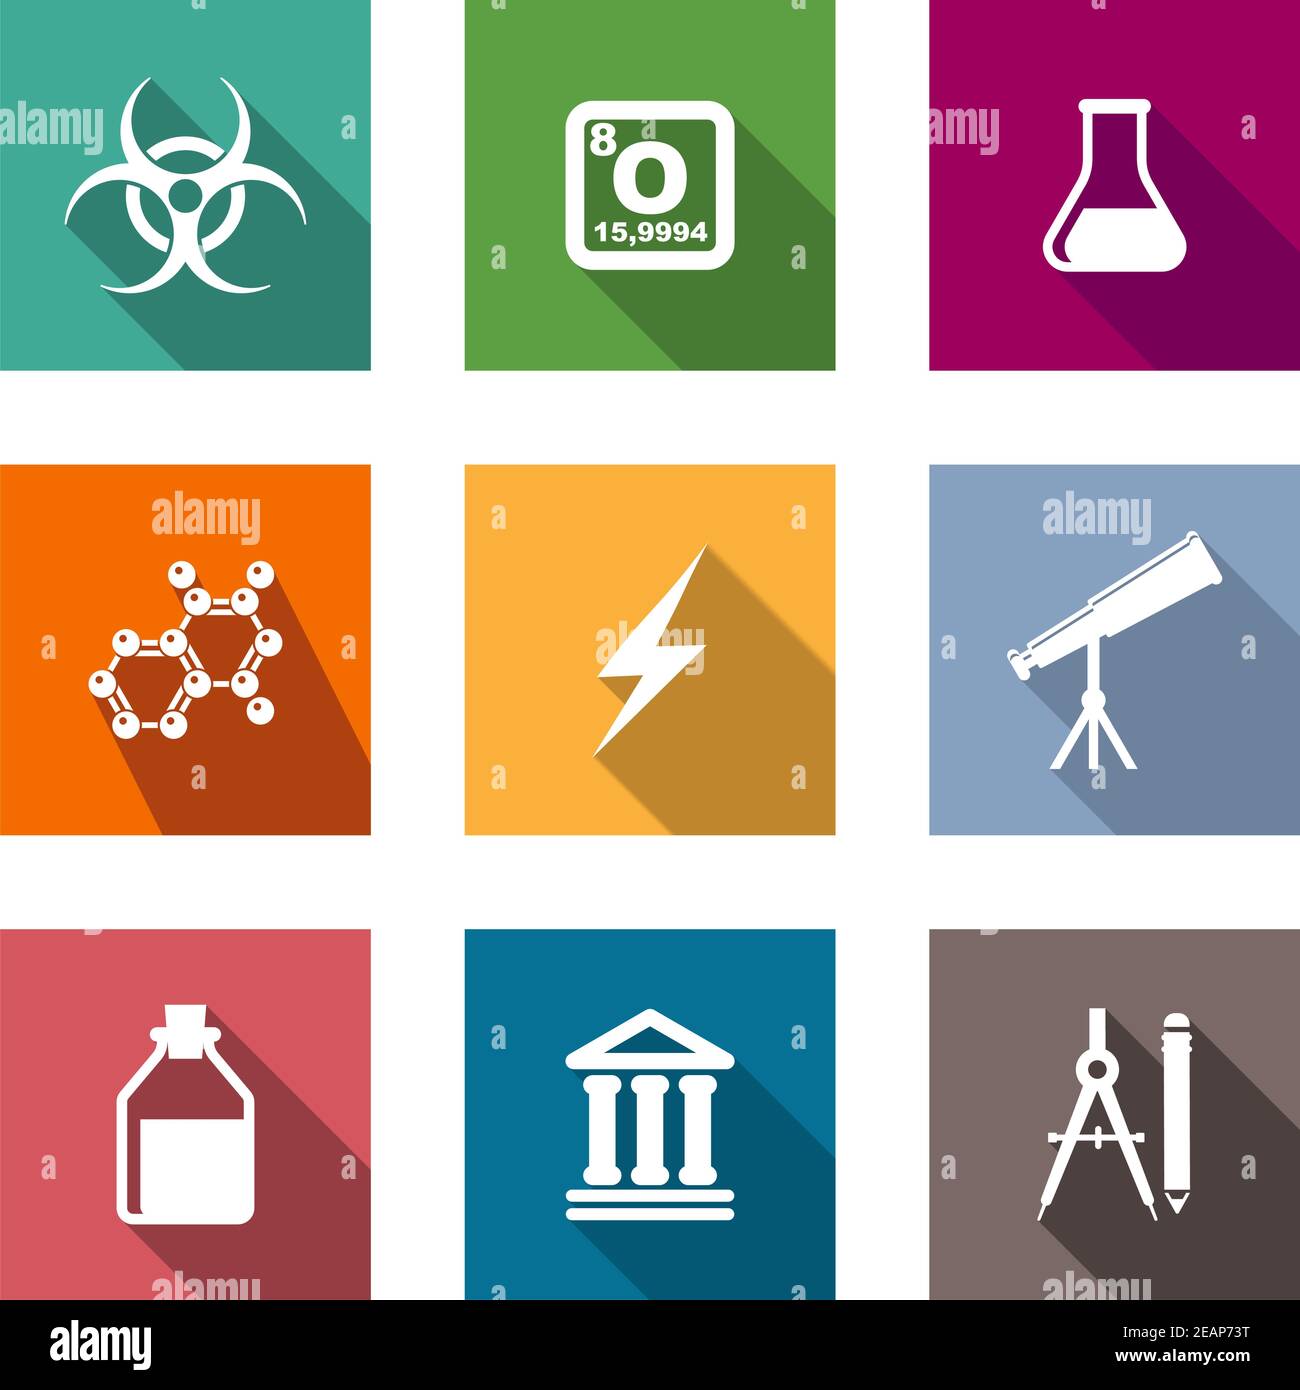 Flache Symbole für Wissenschaft und Bildung mit Kolben, Molekül, Blitz,  Teleskop, Pharma, Fläschchen, Tempel, Kompass und Bleistift  Stock-Vektorgrafik - Alamy